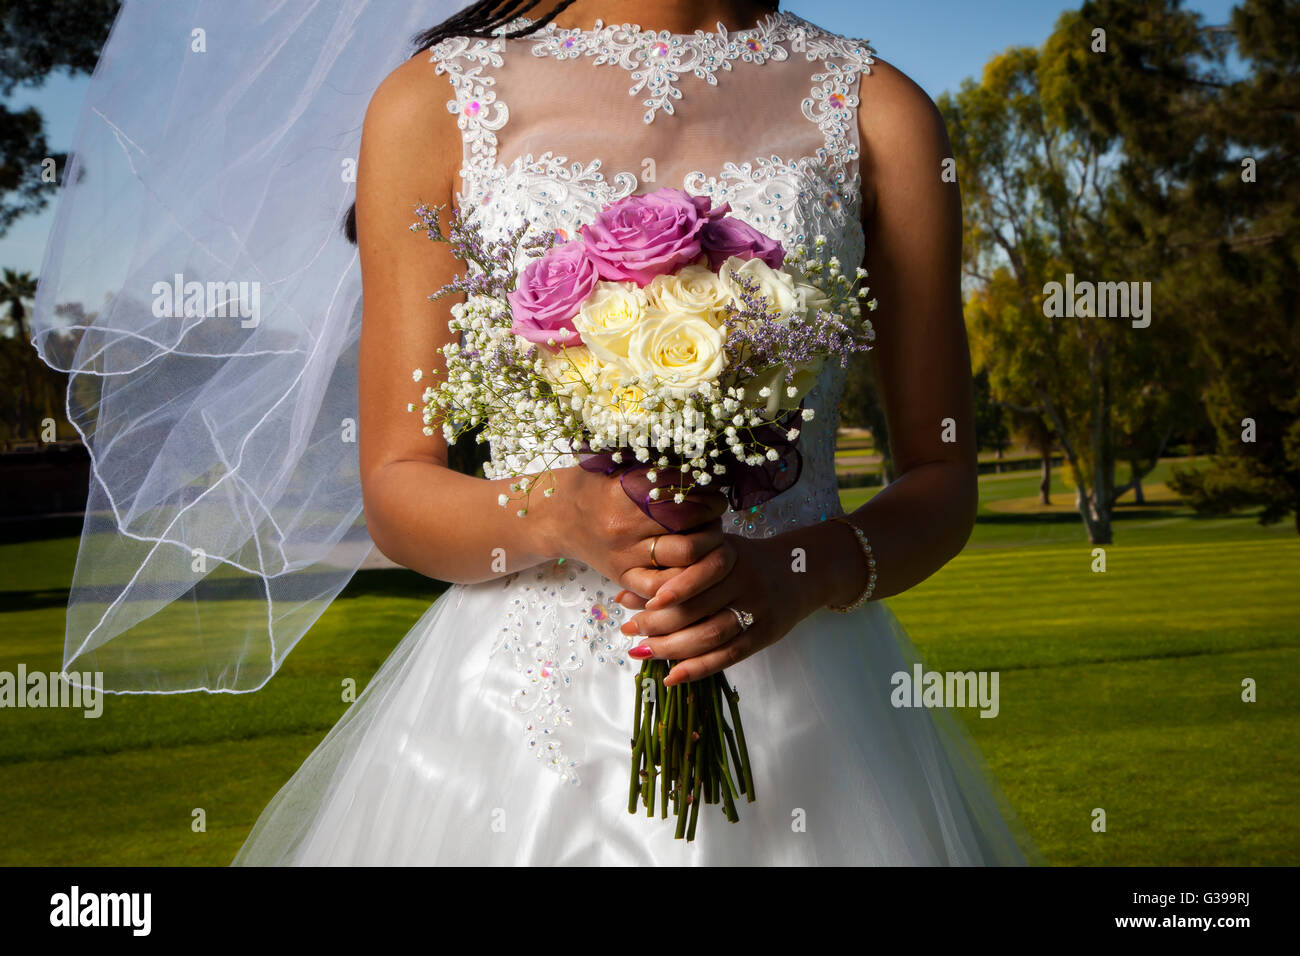 Dettaglio immagine di un americano africano sposa tenendo il suo bouquet di rose di fronte a lei. Il suo velo soffia gentilmente nel vento. Foto Stock